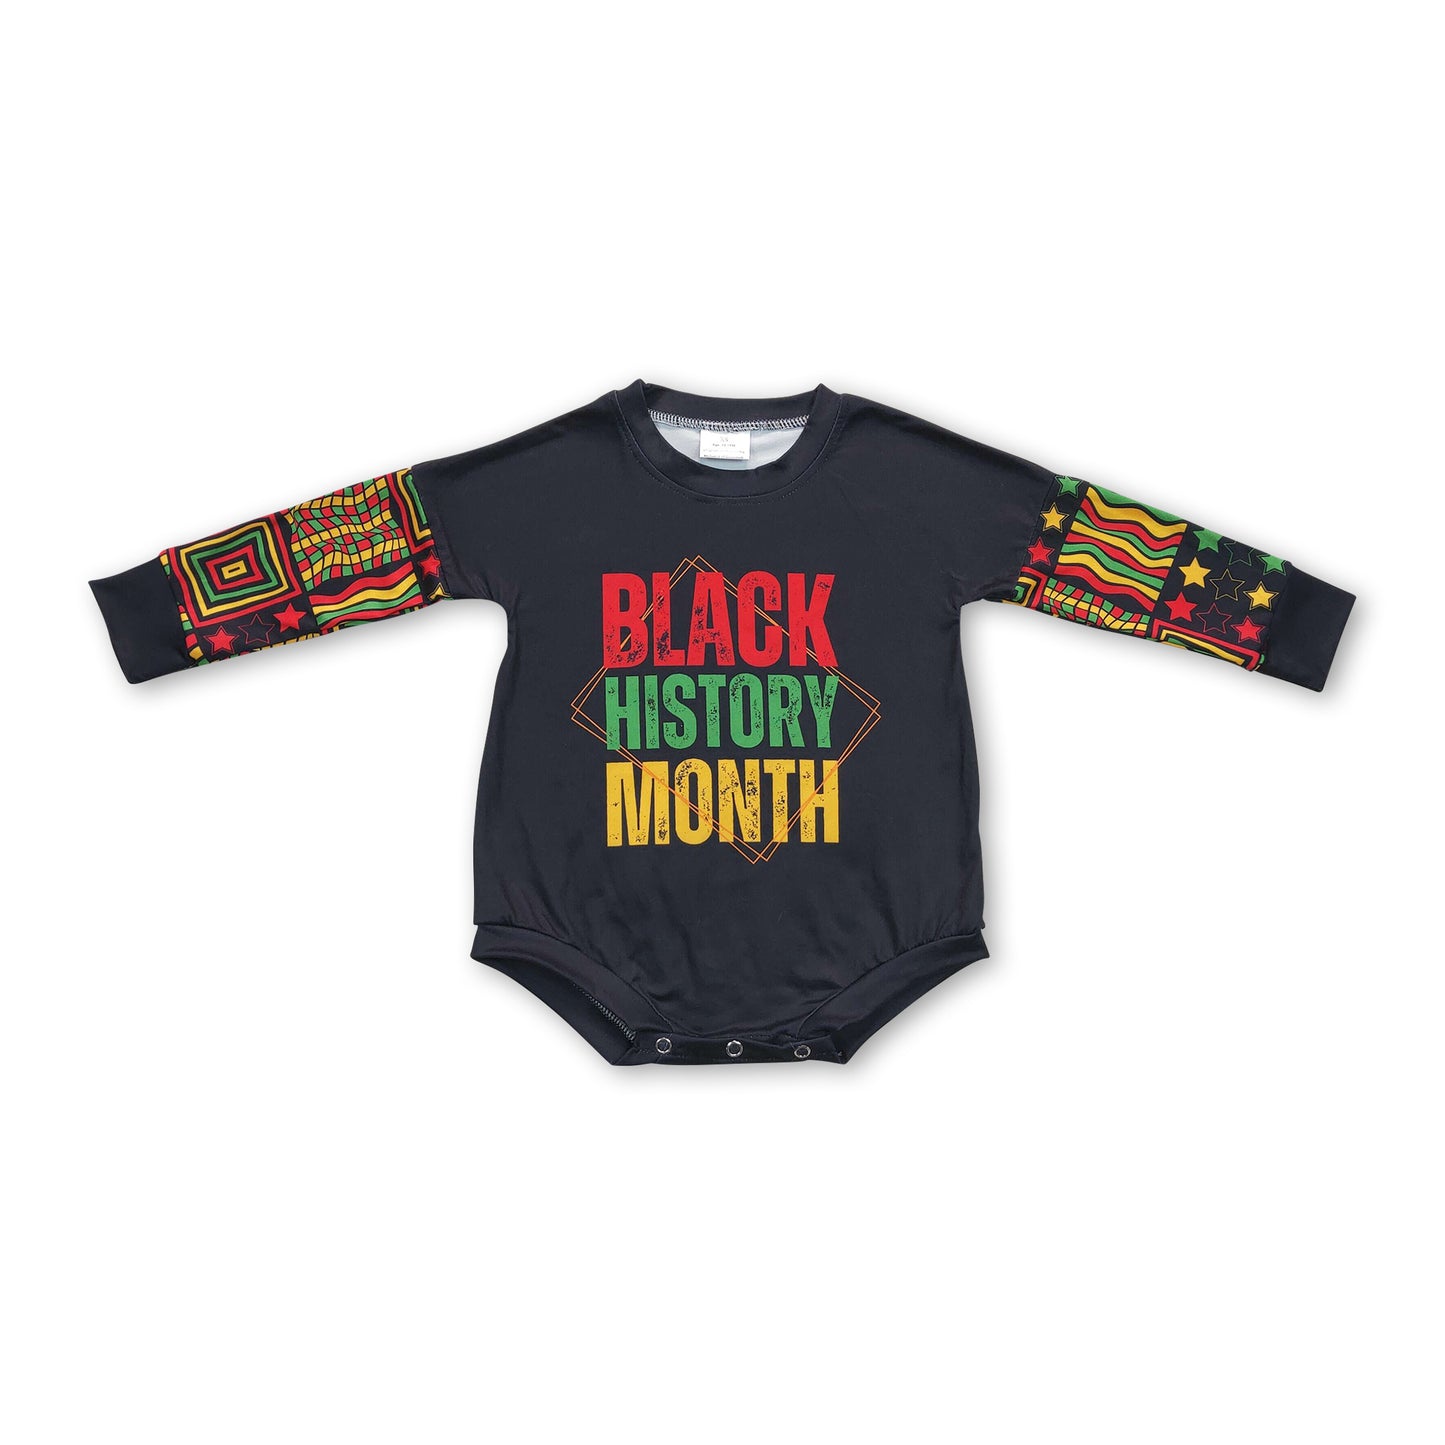 Black history month long sleeves baby kids romper